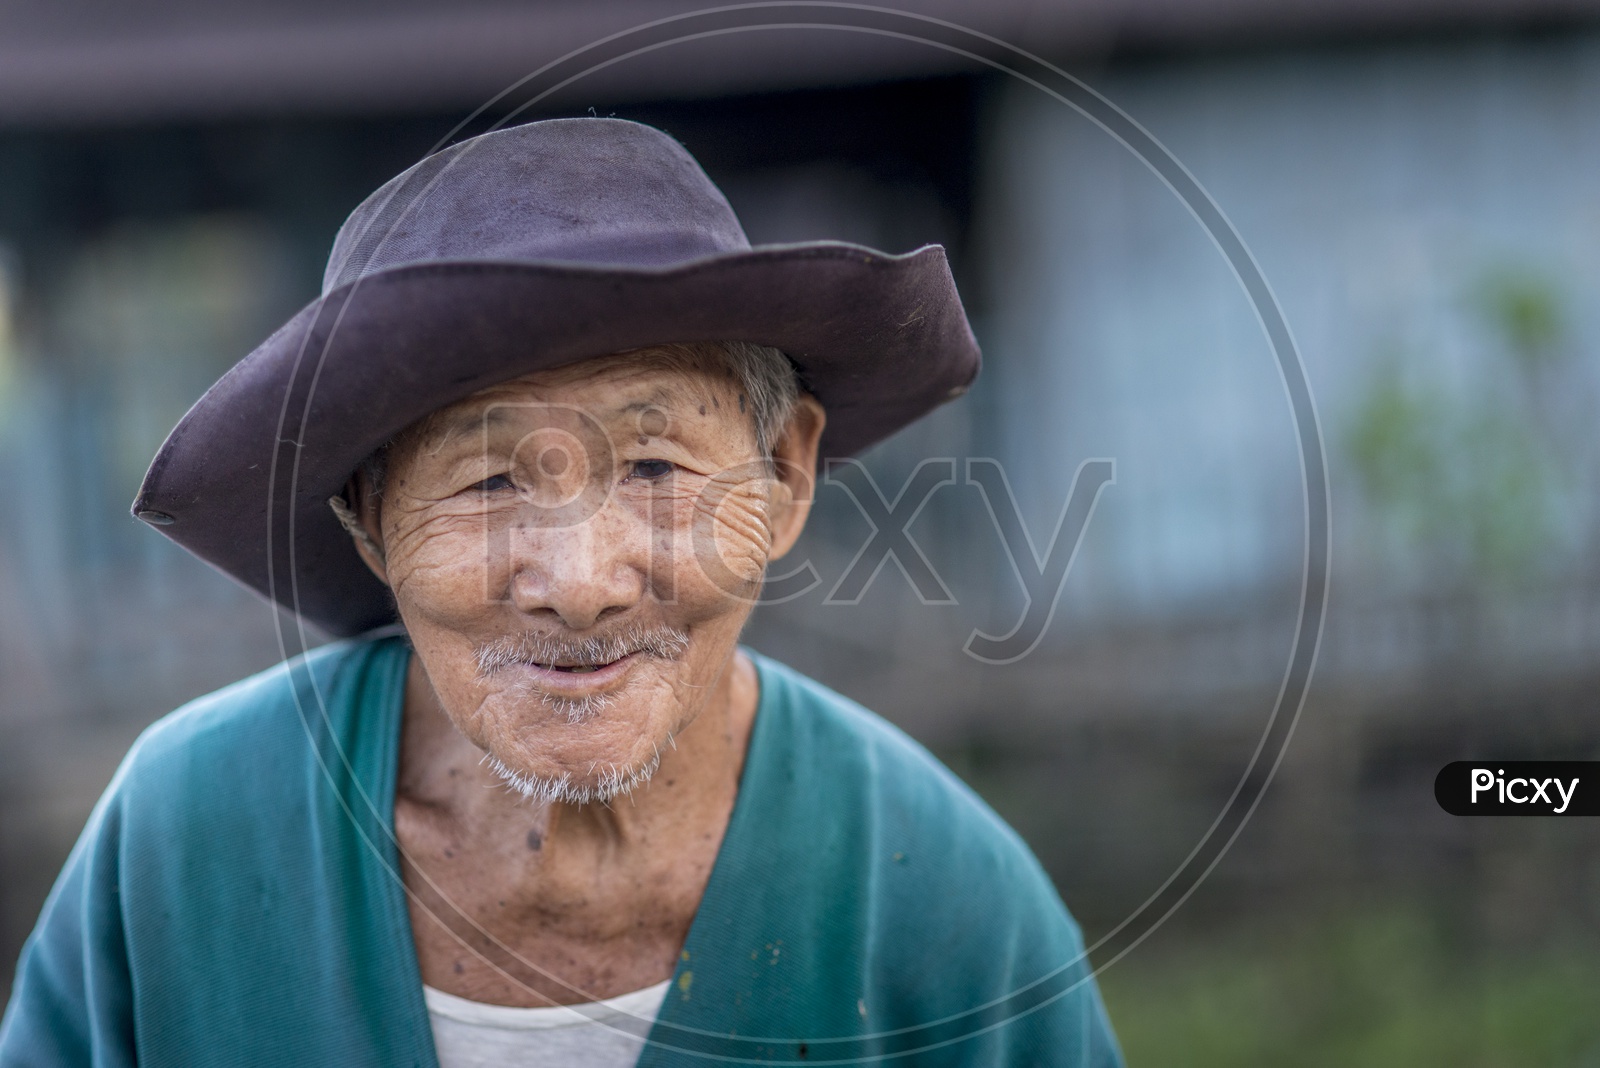 Old Man in Pasighat, Balek Village, Adipasi Tribe